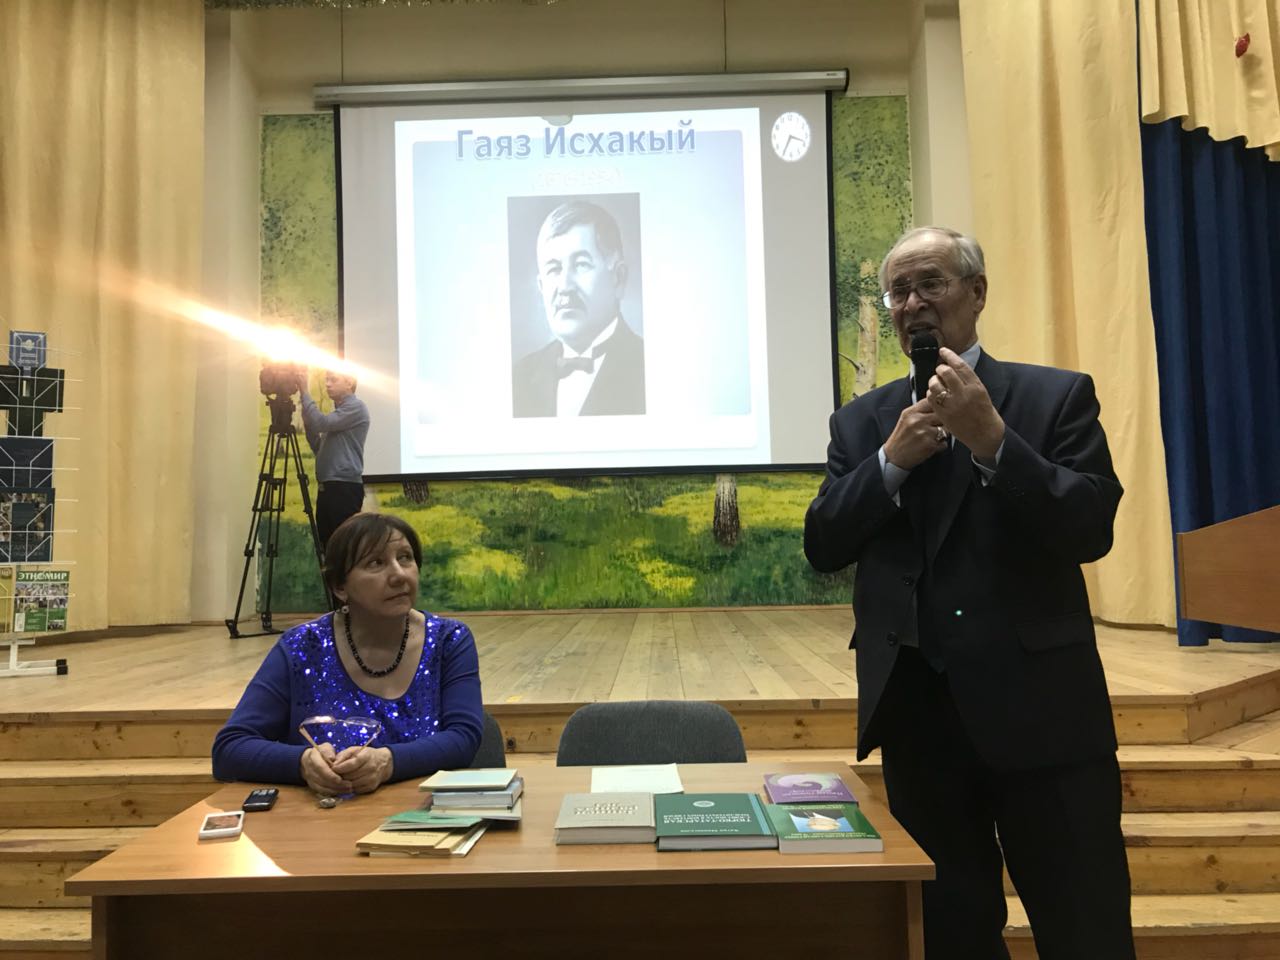 В Москве отпраздновали 140-летие писателя Гаяза Исхаки